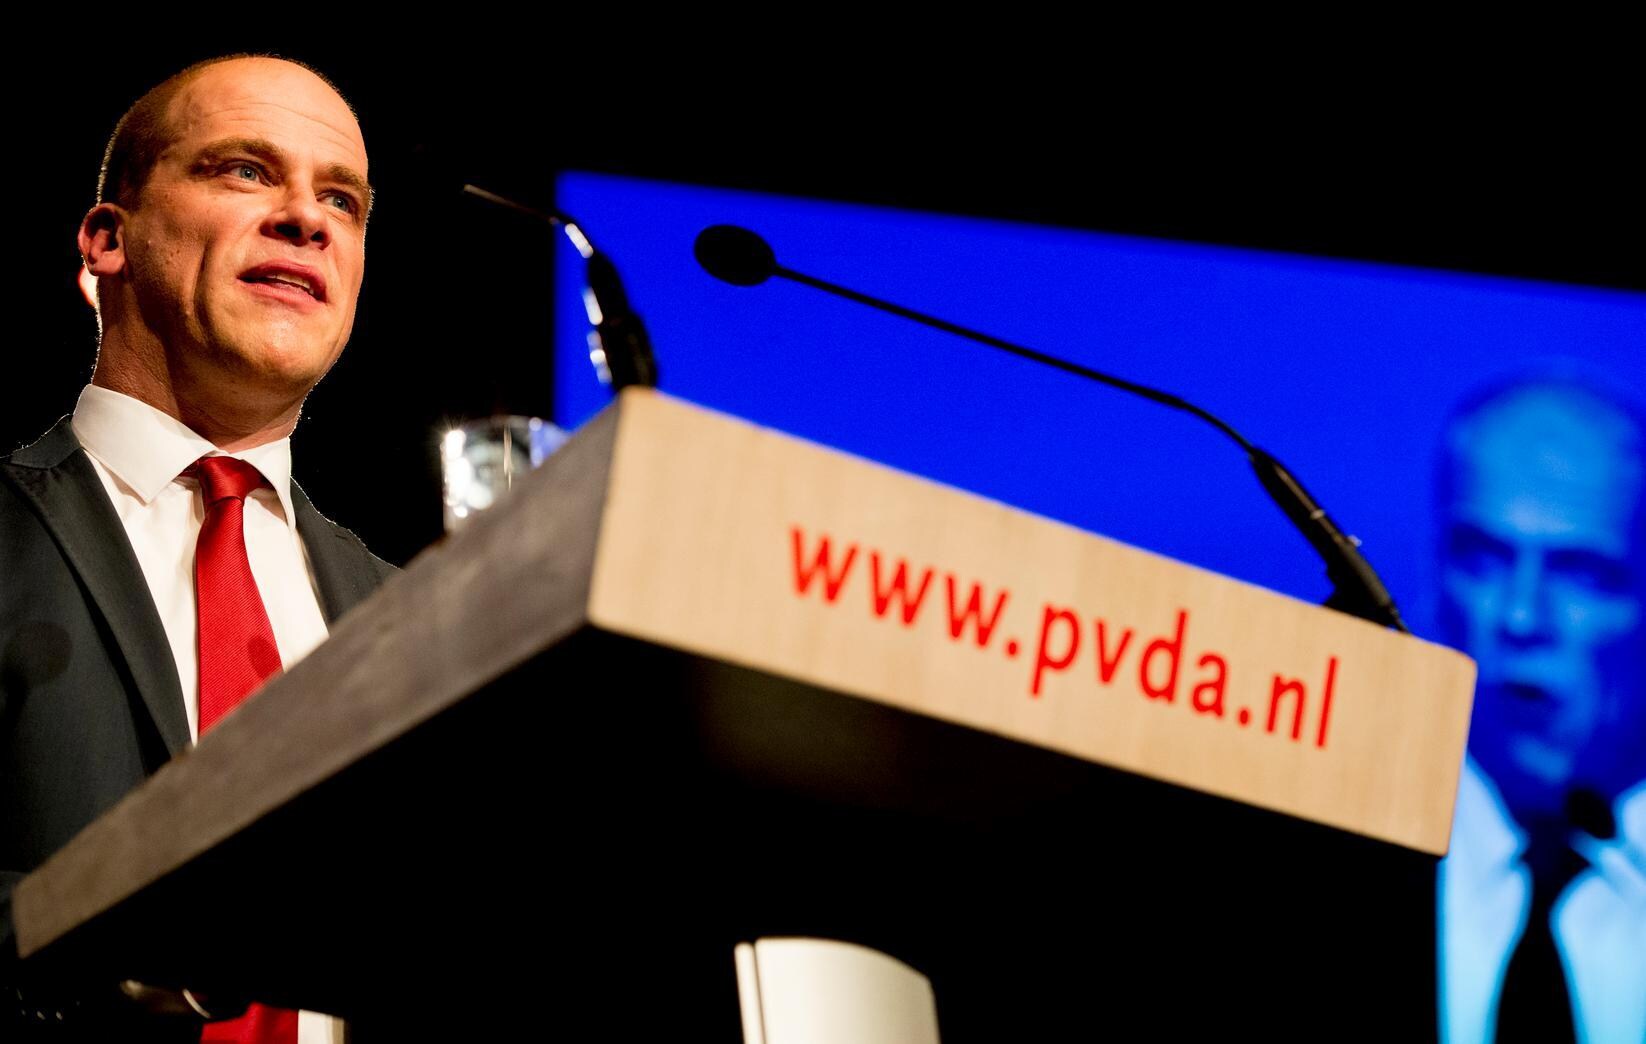 Hoe meer de PvdA smeekt, hoe meer je denkt: weg hier